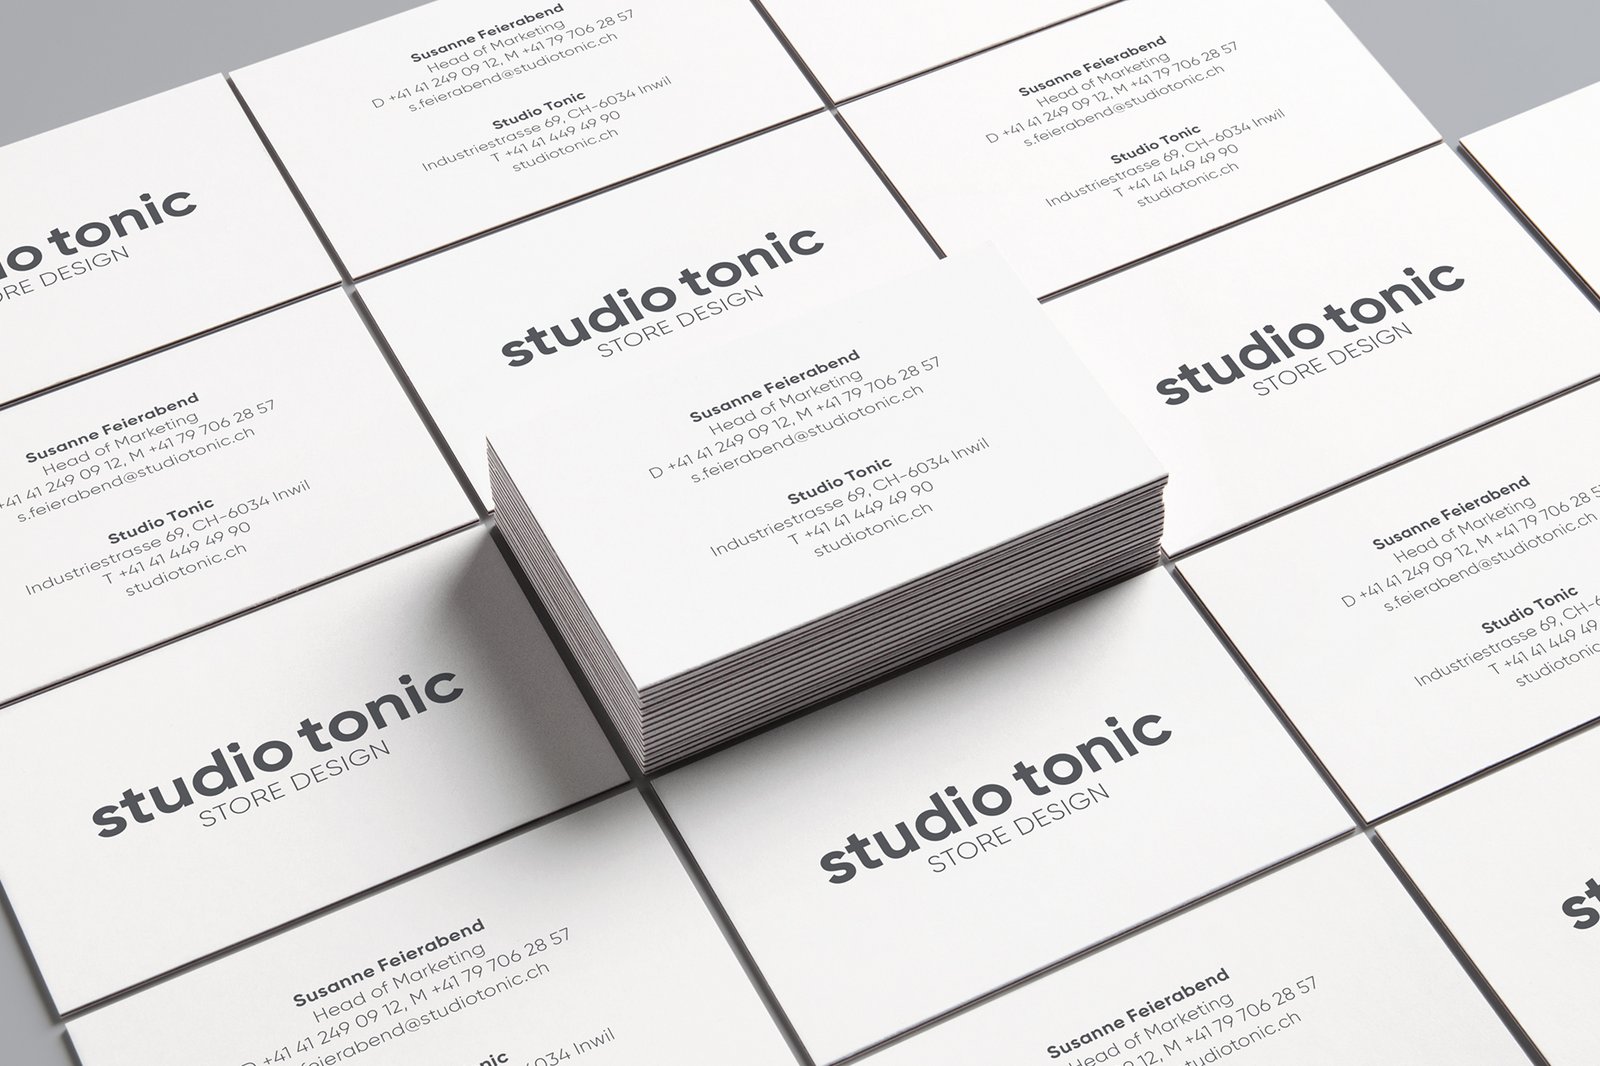 Studio Tonic – Corporate Design, Konzeption, Gestaltung und Programmierung